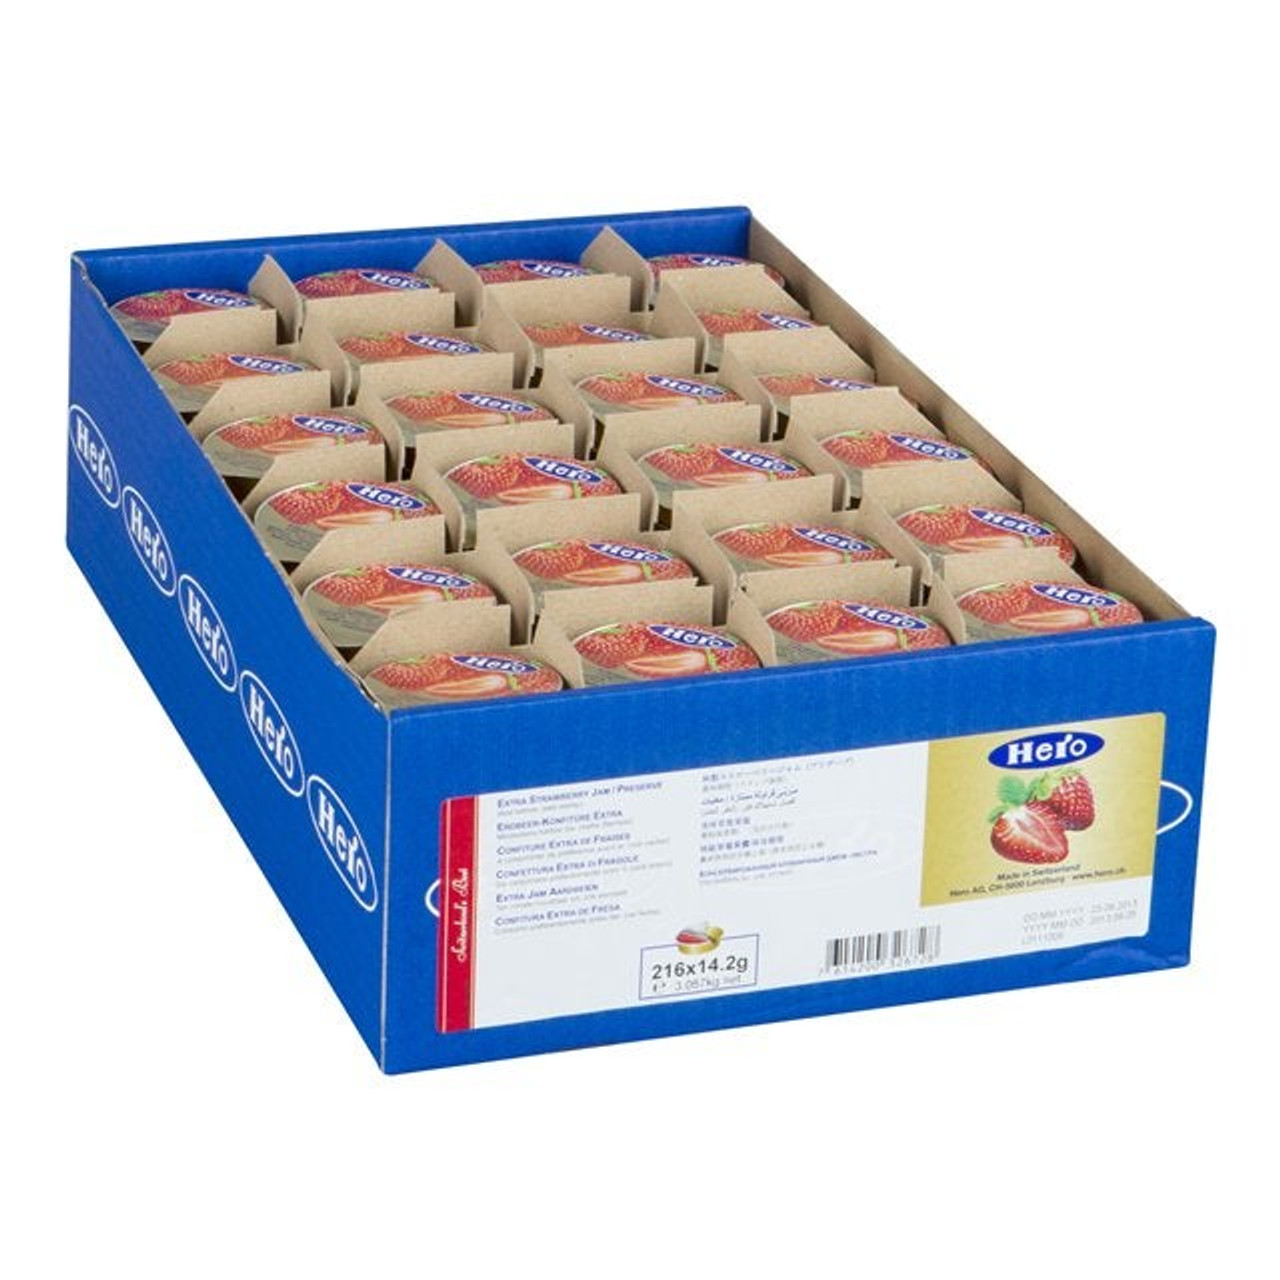 HERO Strawberry Premium Jam, Foil Portion | 14G/Unit, 216 Units/Case